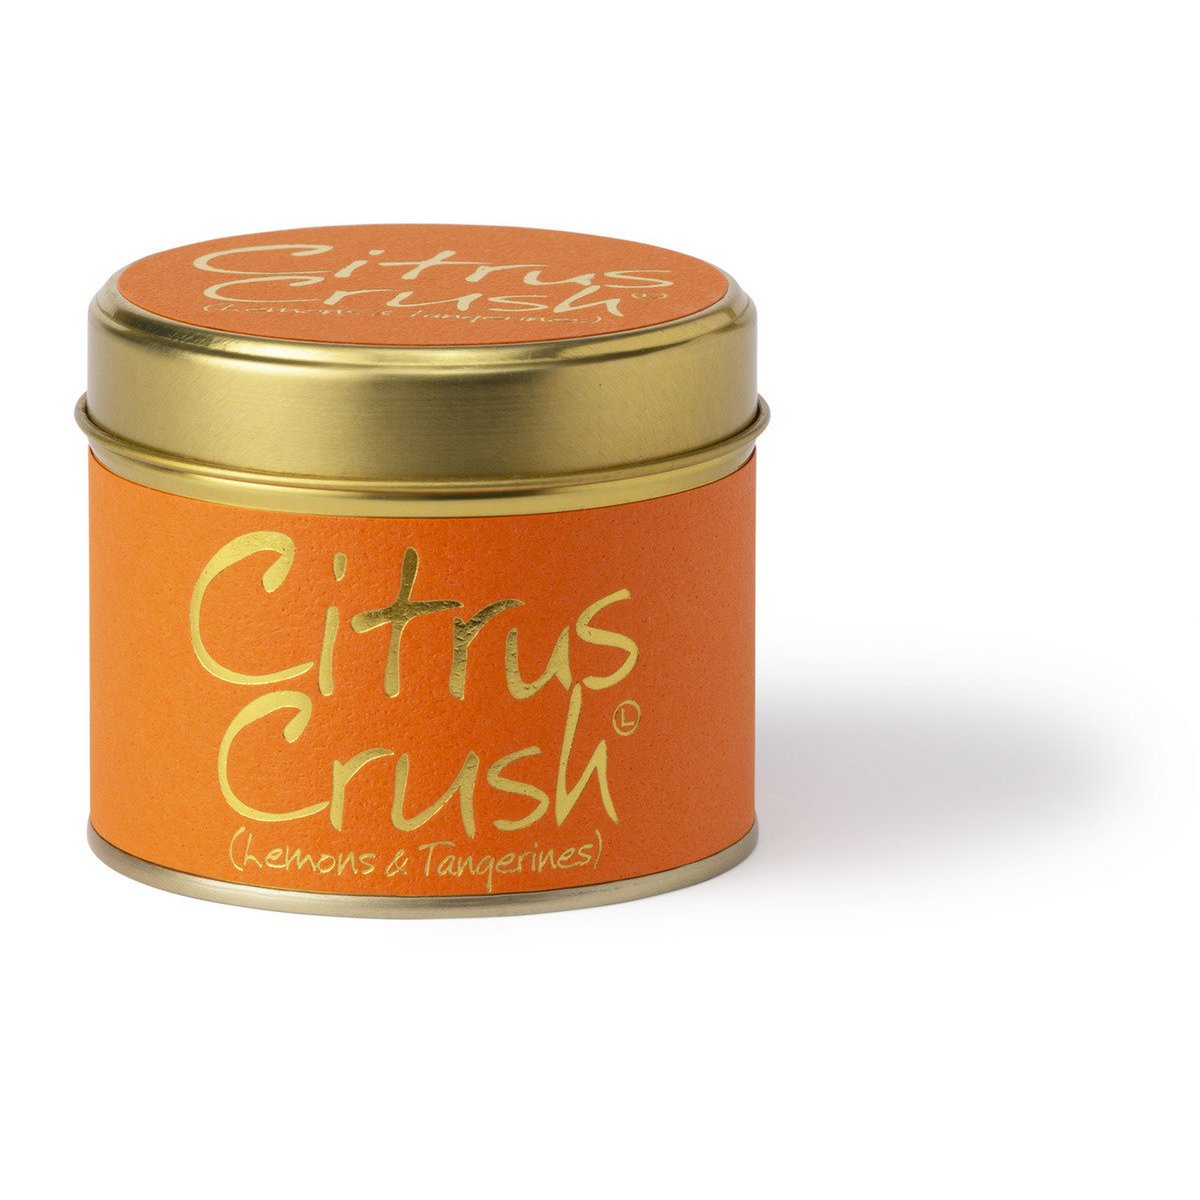 Citrus Crush vegan kaars